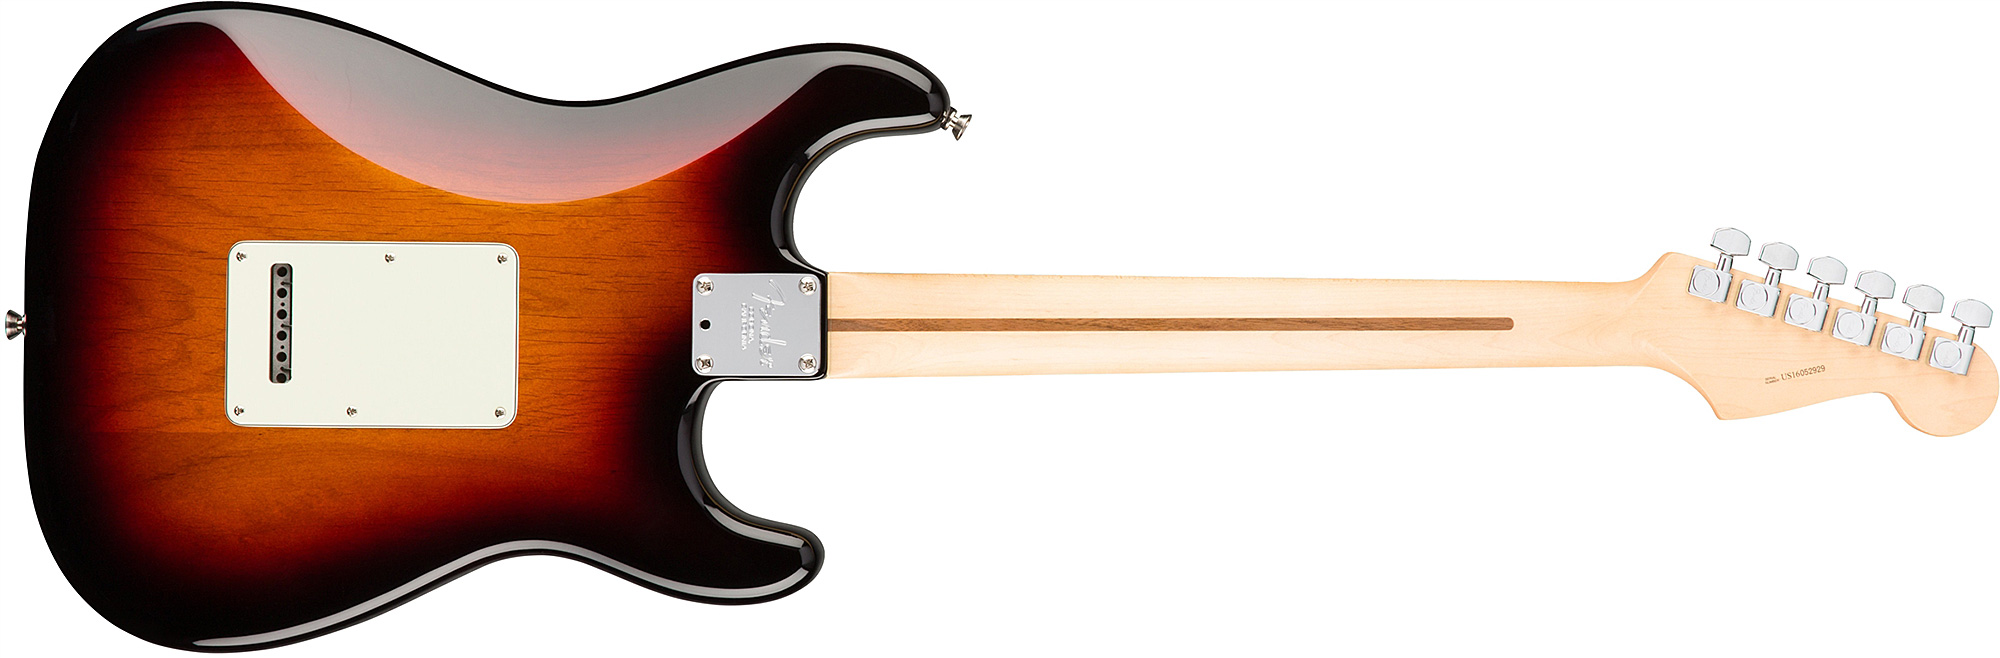 Fender Strat American Professional Lh Usa Gaucher 3s Rw - 3-color Sunburst - Guitarra electrica para zurdos - Variation 1